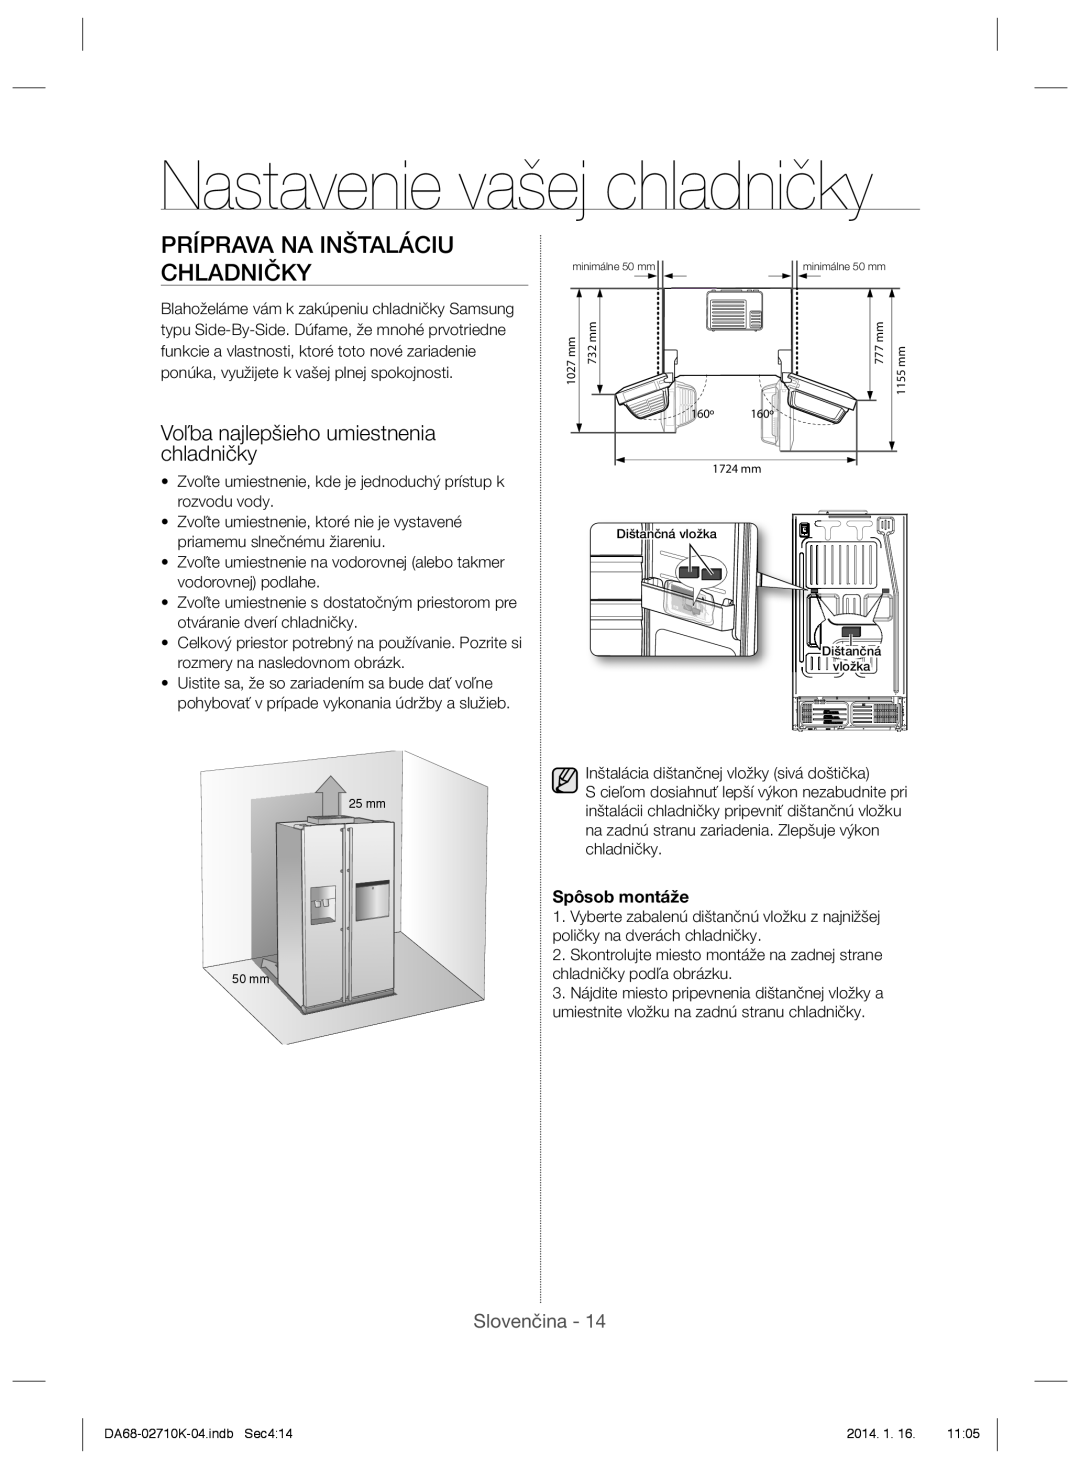 Samsung RS7578THCSR/EF, RS7568BHCSP/EF manual Nastavenie vašej chladničky, Príprava Na Inštaláciu Chladničky, Slovenčina 